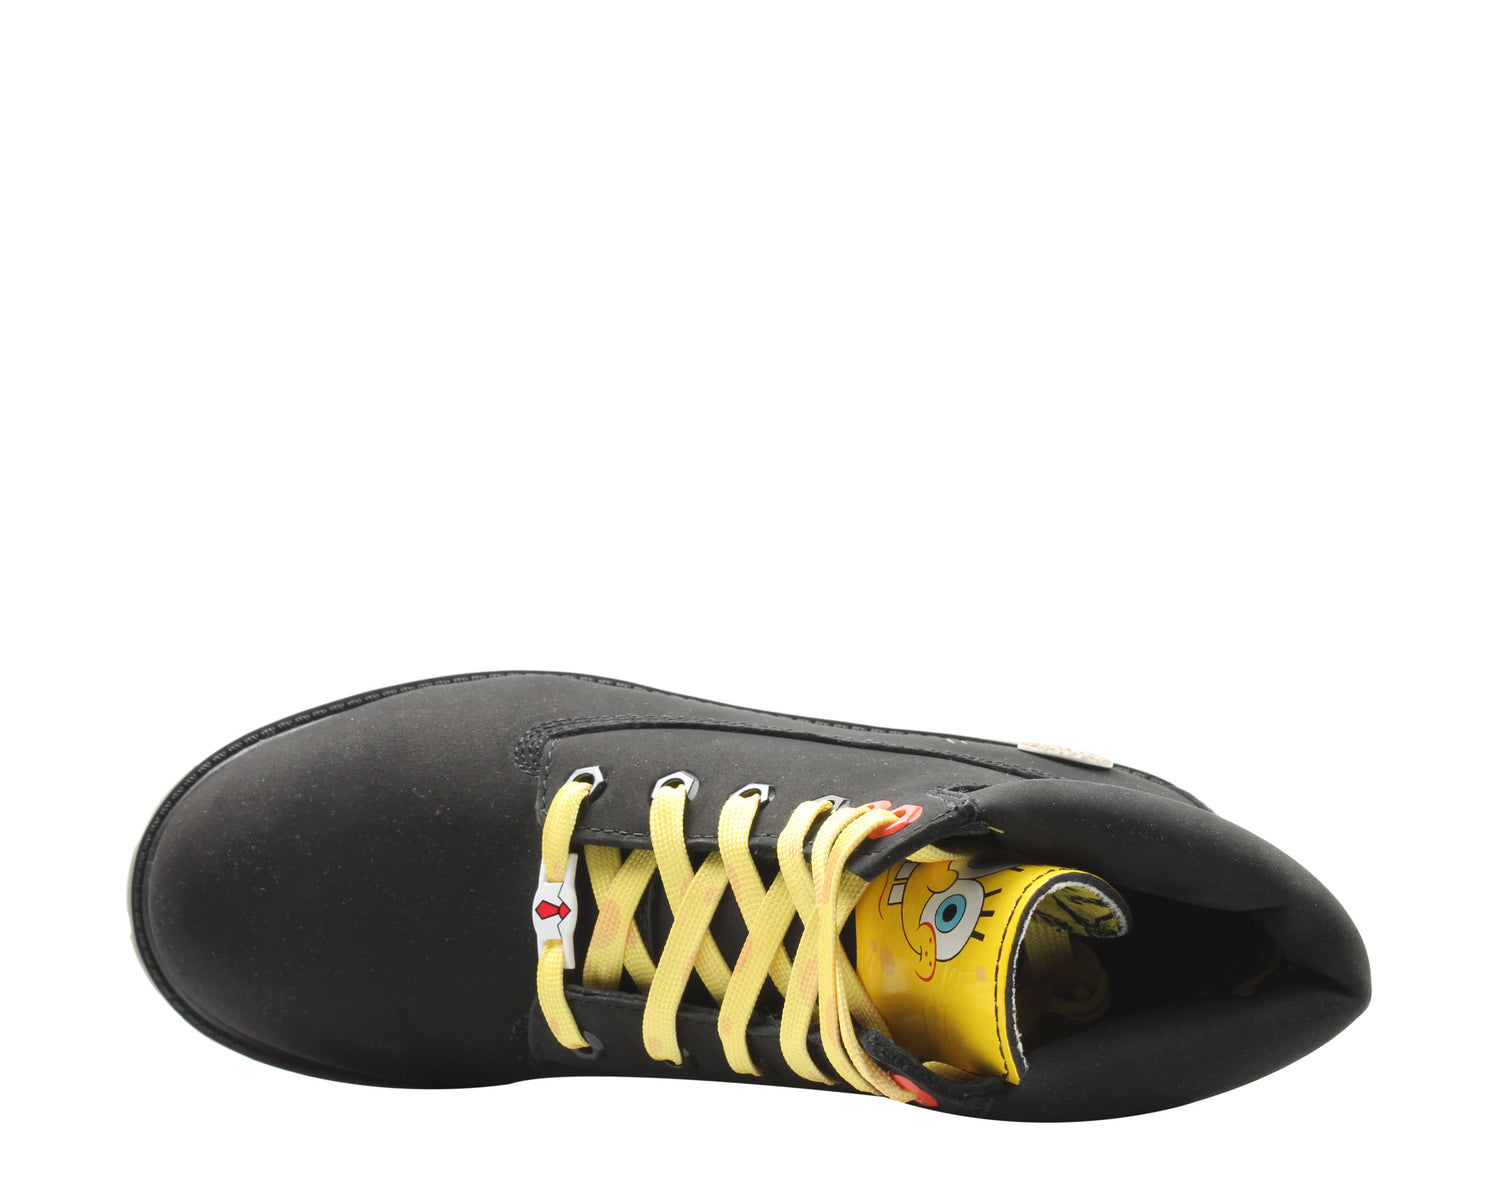 Timberland x Spongebob Premium 6-Inch Waterproof Junior Big Kids Boots